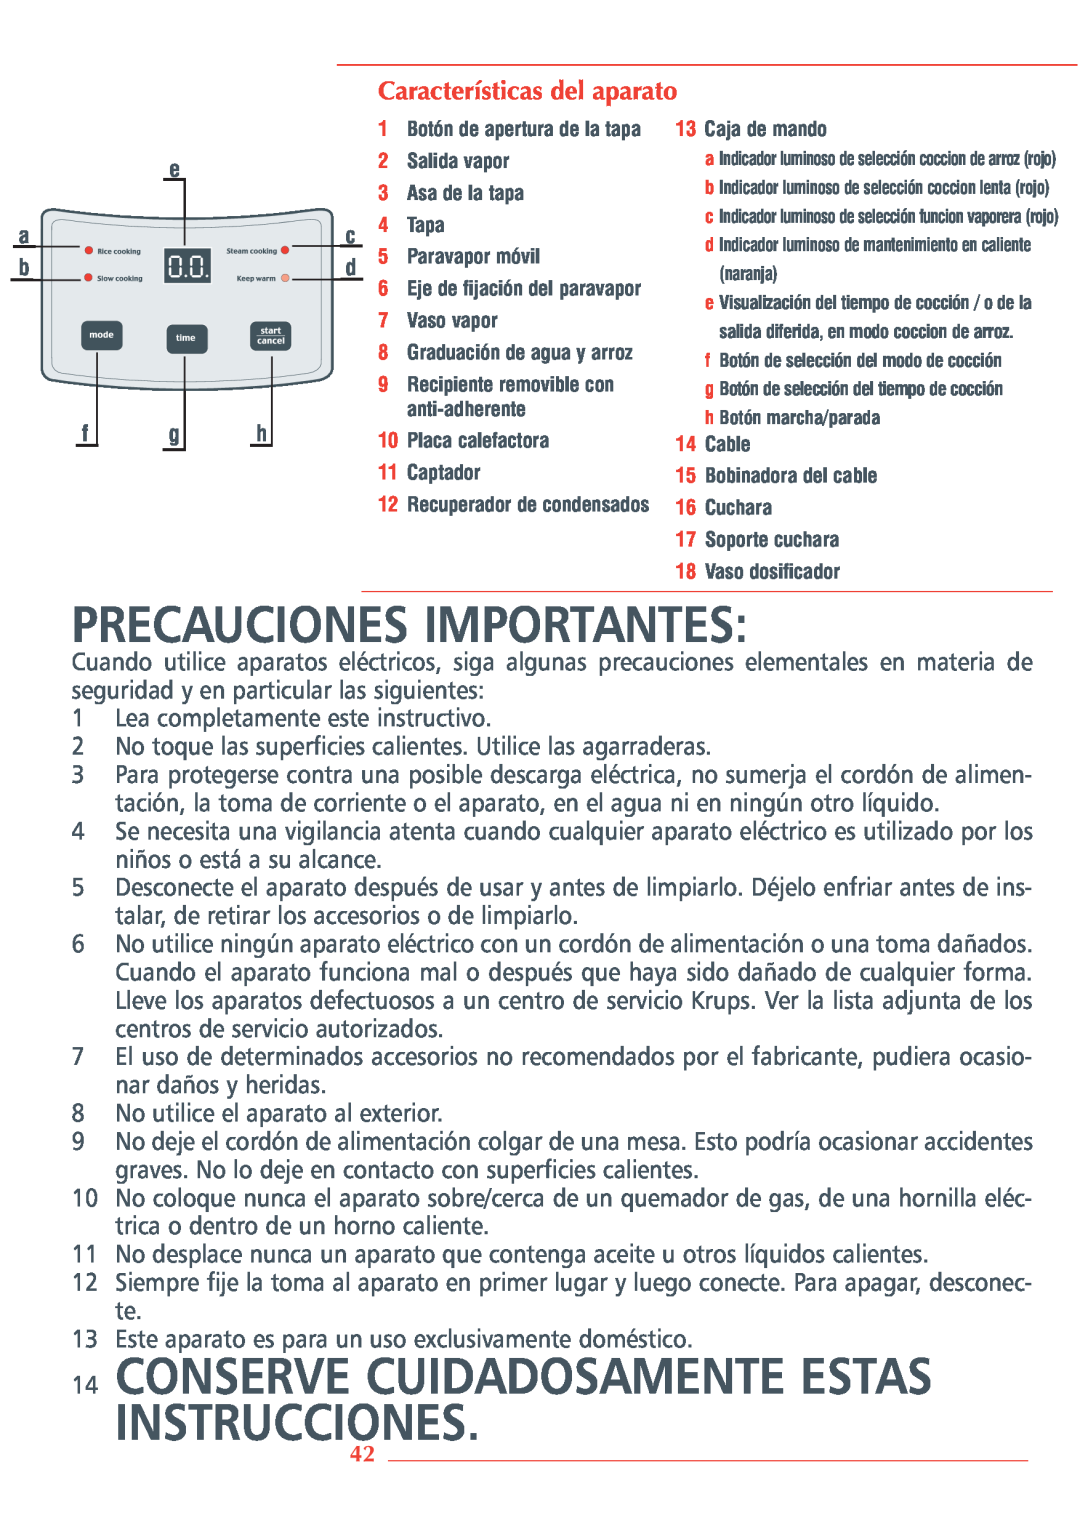 Krups 3.21 manual Precauciones Importantes, Instrucciones, Conserve Cuidadosamente Estas, Características del aparato 